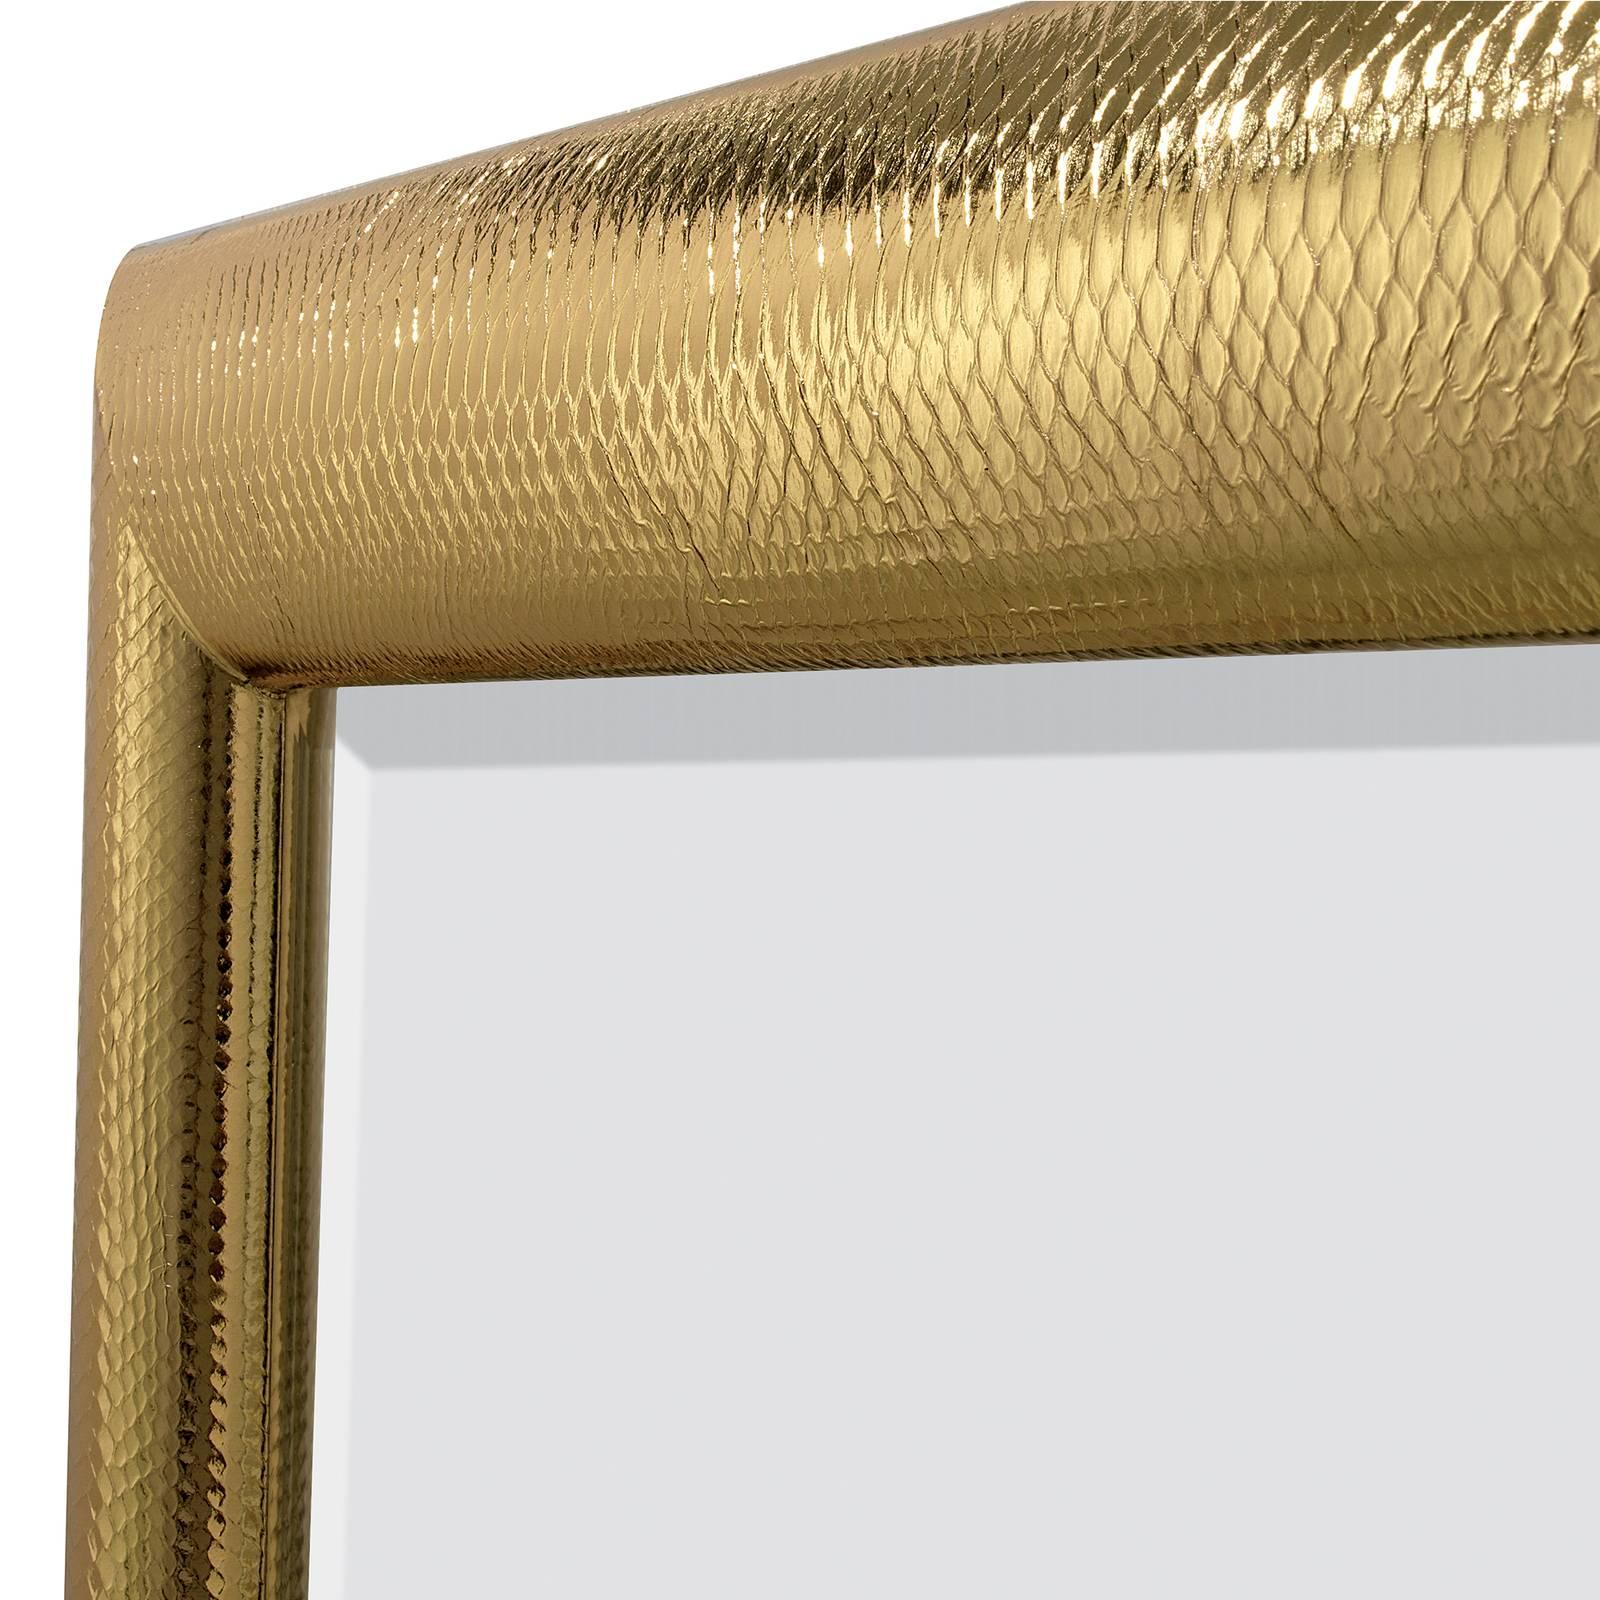 Somptueux et élégant, ce superbe miroir présente un revêtement en cuir de python véritable sur le cadre en bois recouvert d'un or éclatant. L'effet est une pièce unique de décoration fonctionnelle qui sera un complément parfait à un intérieur